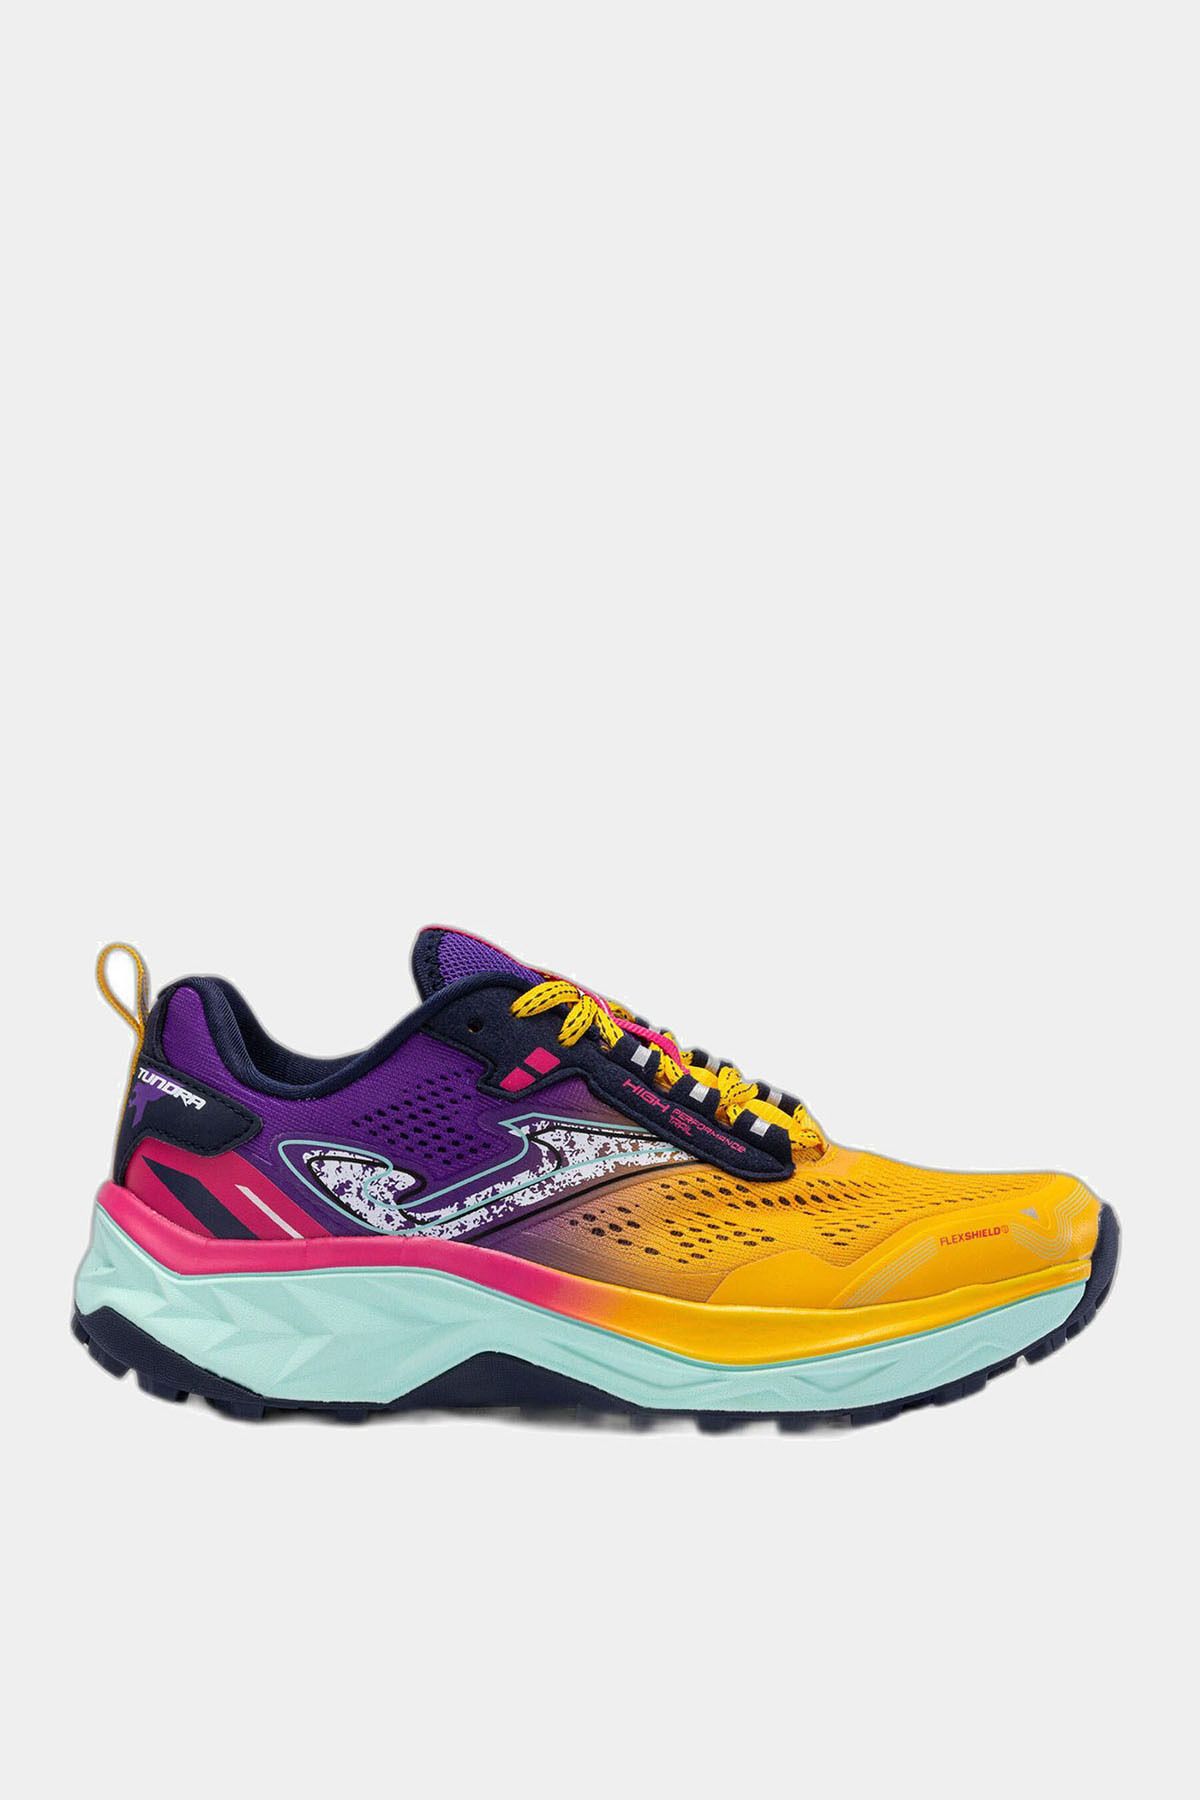 Joma Kadın Koşu - Yürüyüş Ayakkabısı Tundra Lady 2328 Orange Purple Tktulw2328